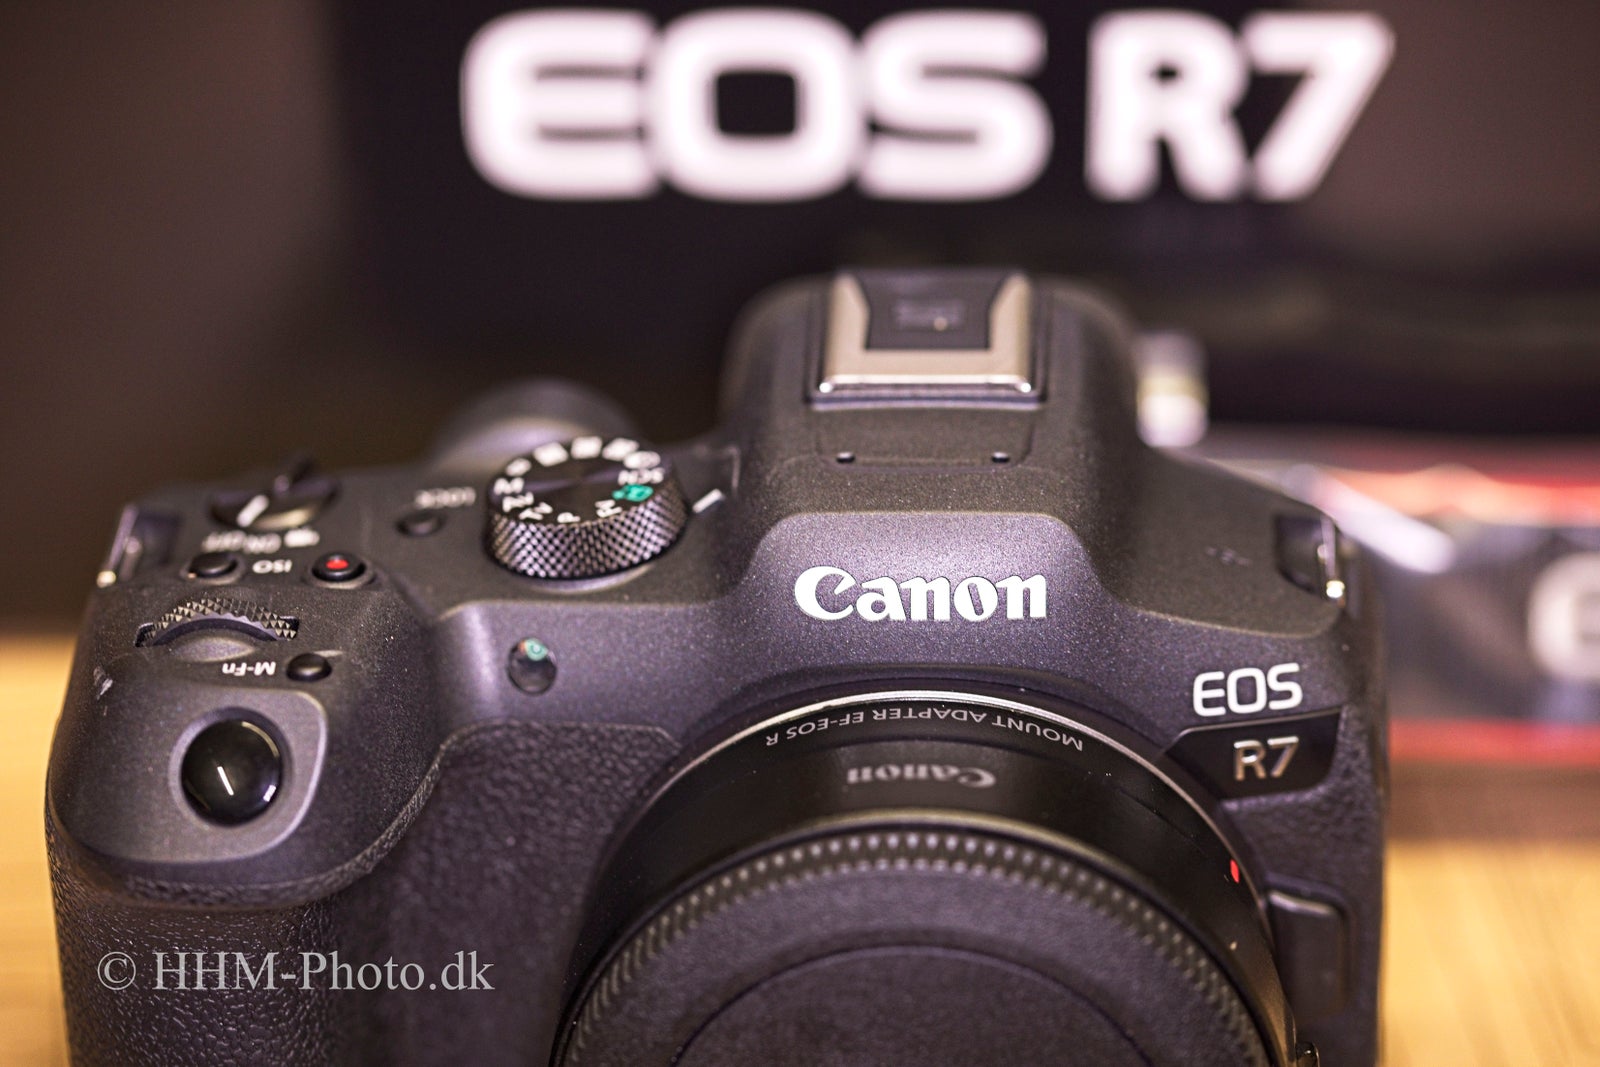 Canon, EOS R7, 32 megapixels